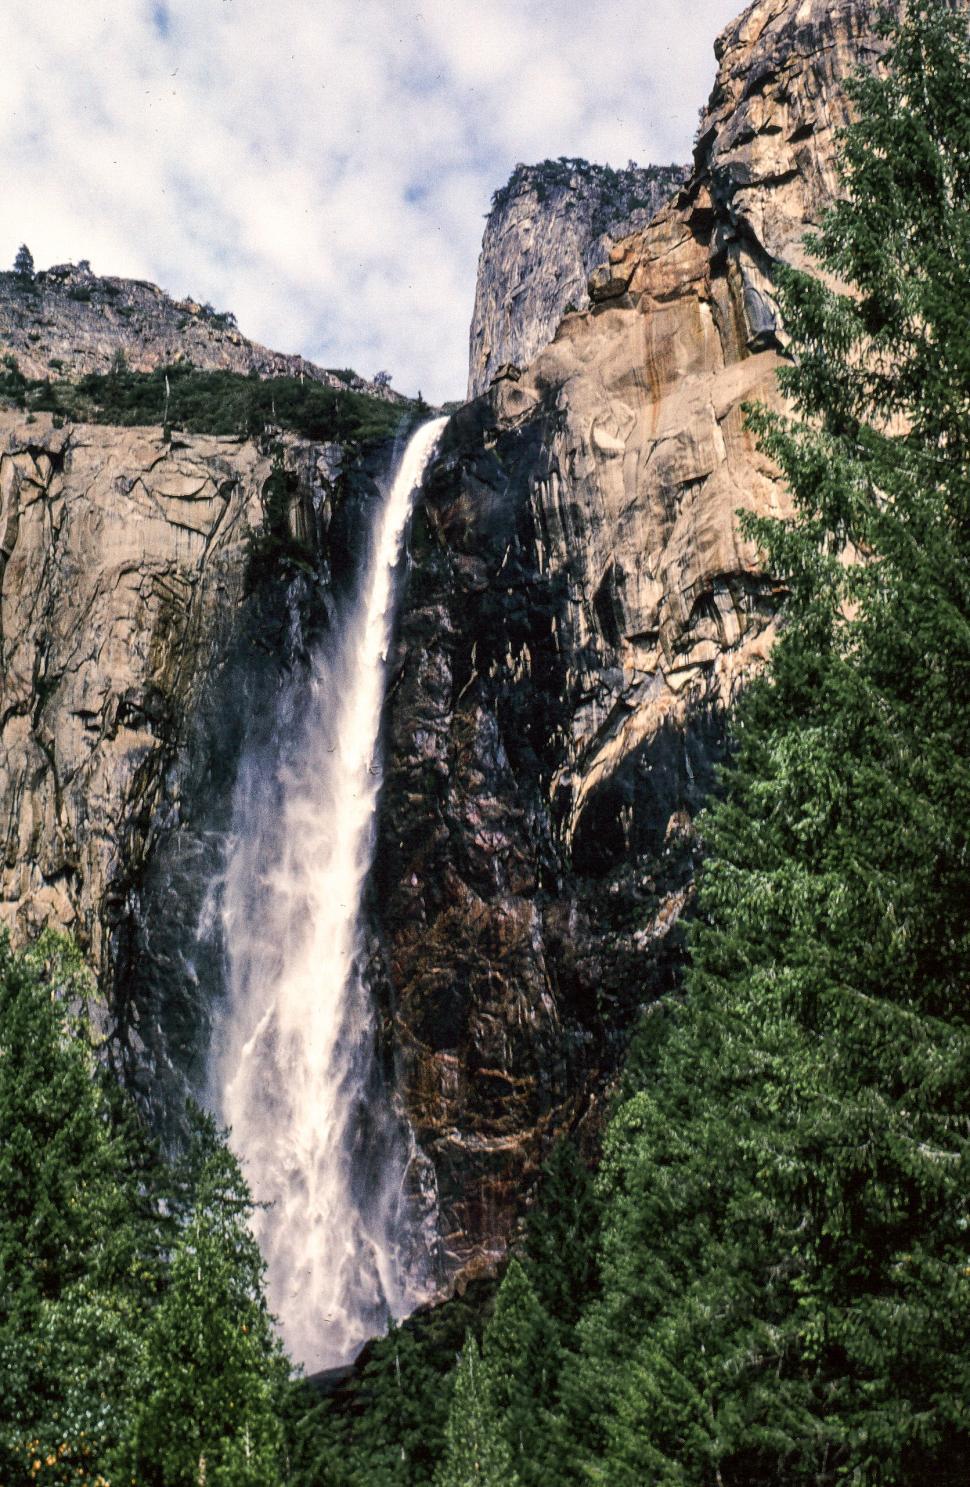 Free Image of Yosemite Falls Vintage Photo 